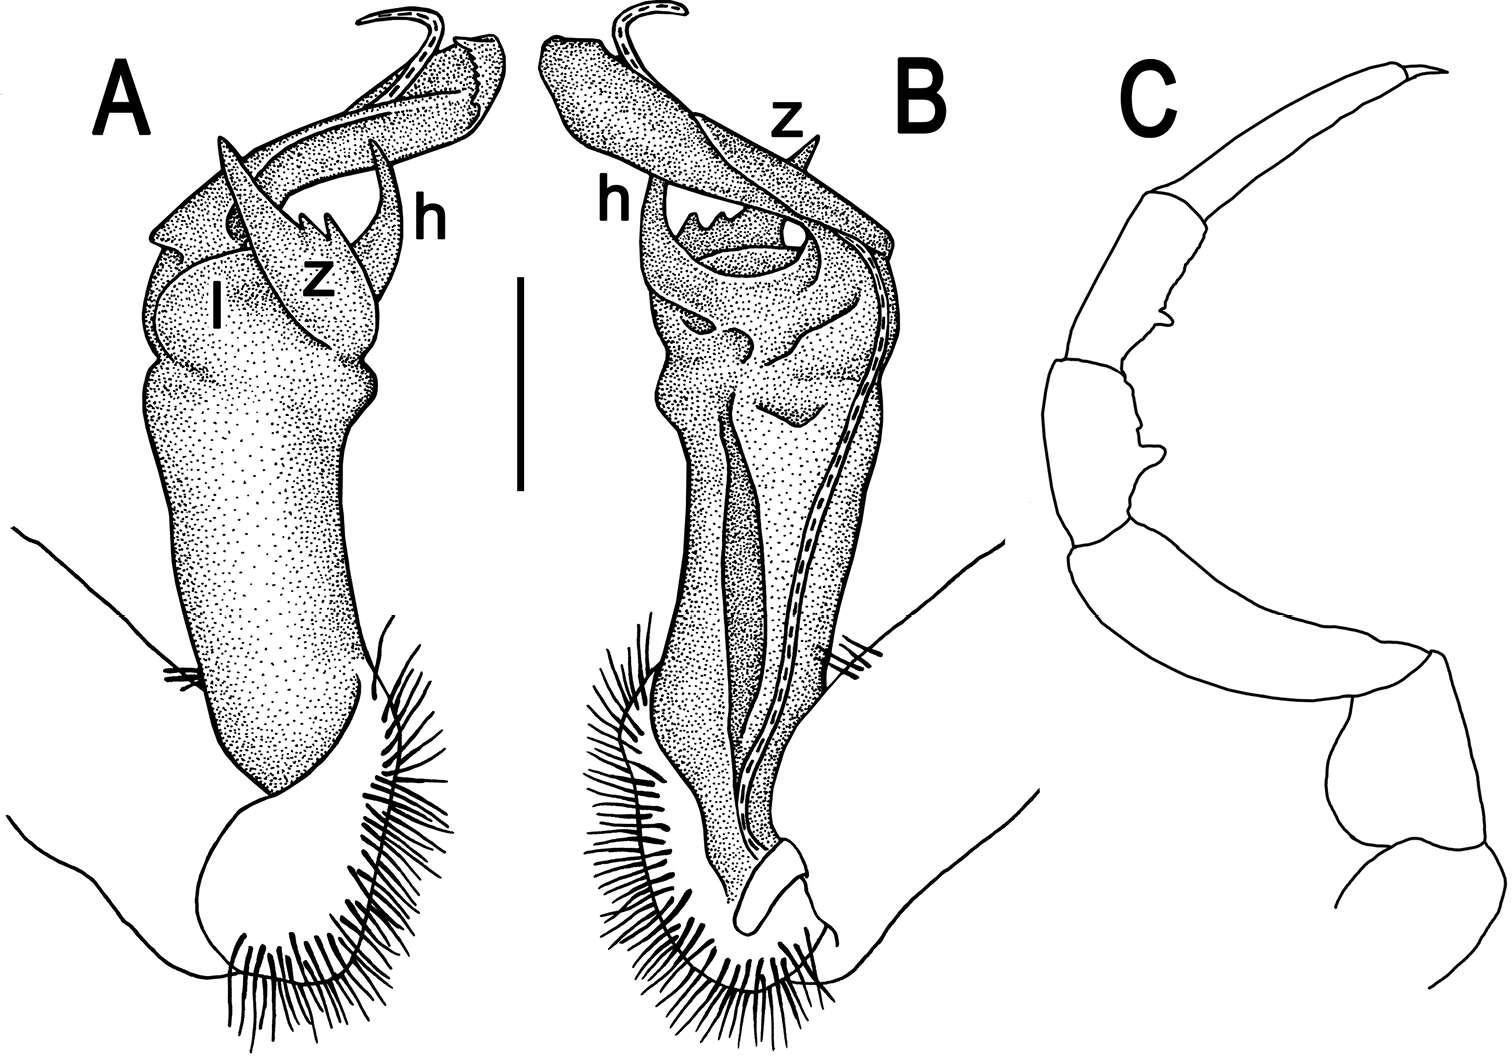 Image of Tylopus parahilaroides Likhitrakarn, Golovatch & Panha 2014